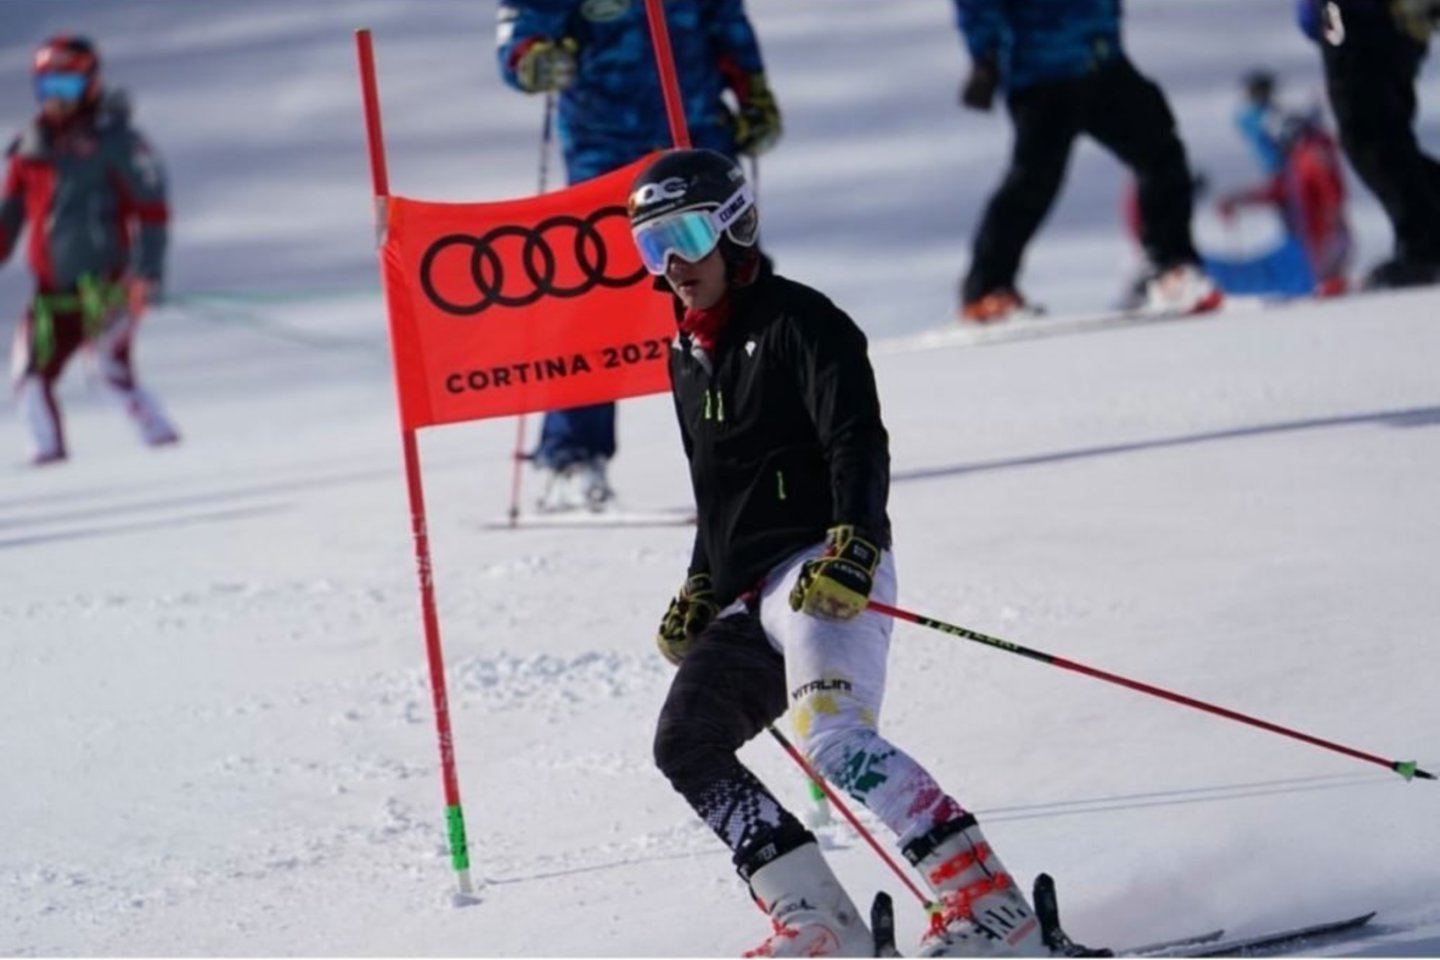 Pasaulio čempionate – geriausias Lietuvos kalnų slidinėjimo rezultatas istorijoje.<br> sportas.info nuotr.